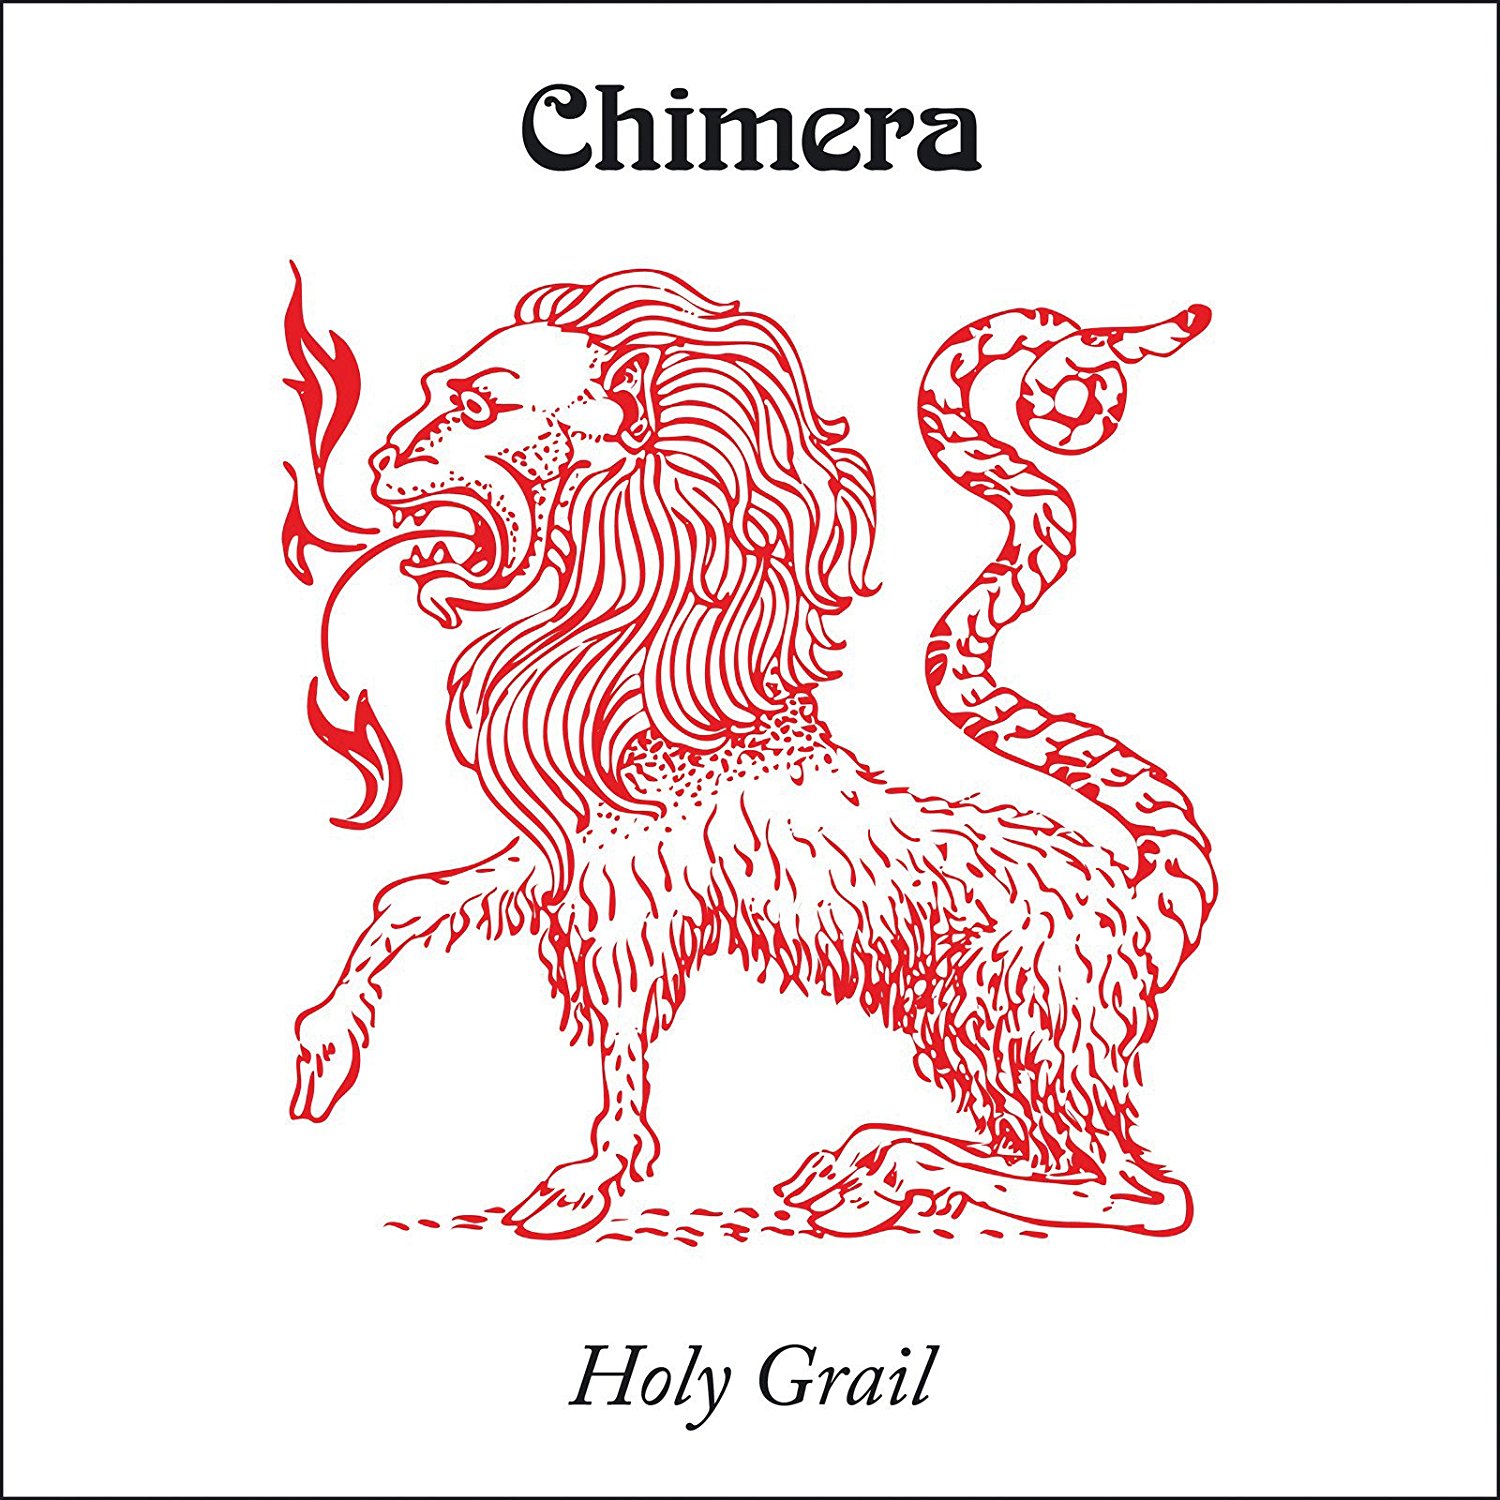 Утерянный грааль психоделического рока Chimera "Holy Grail" получил долгожданное виниловое переиздание